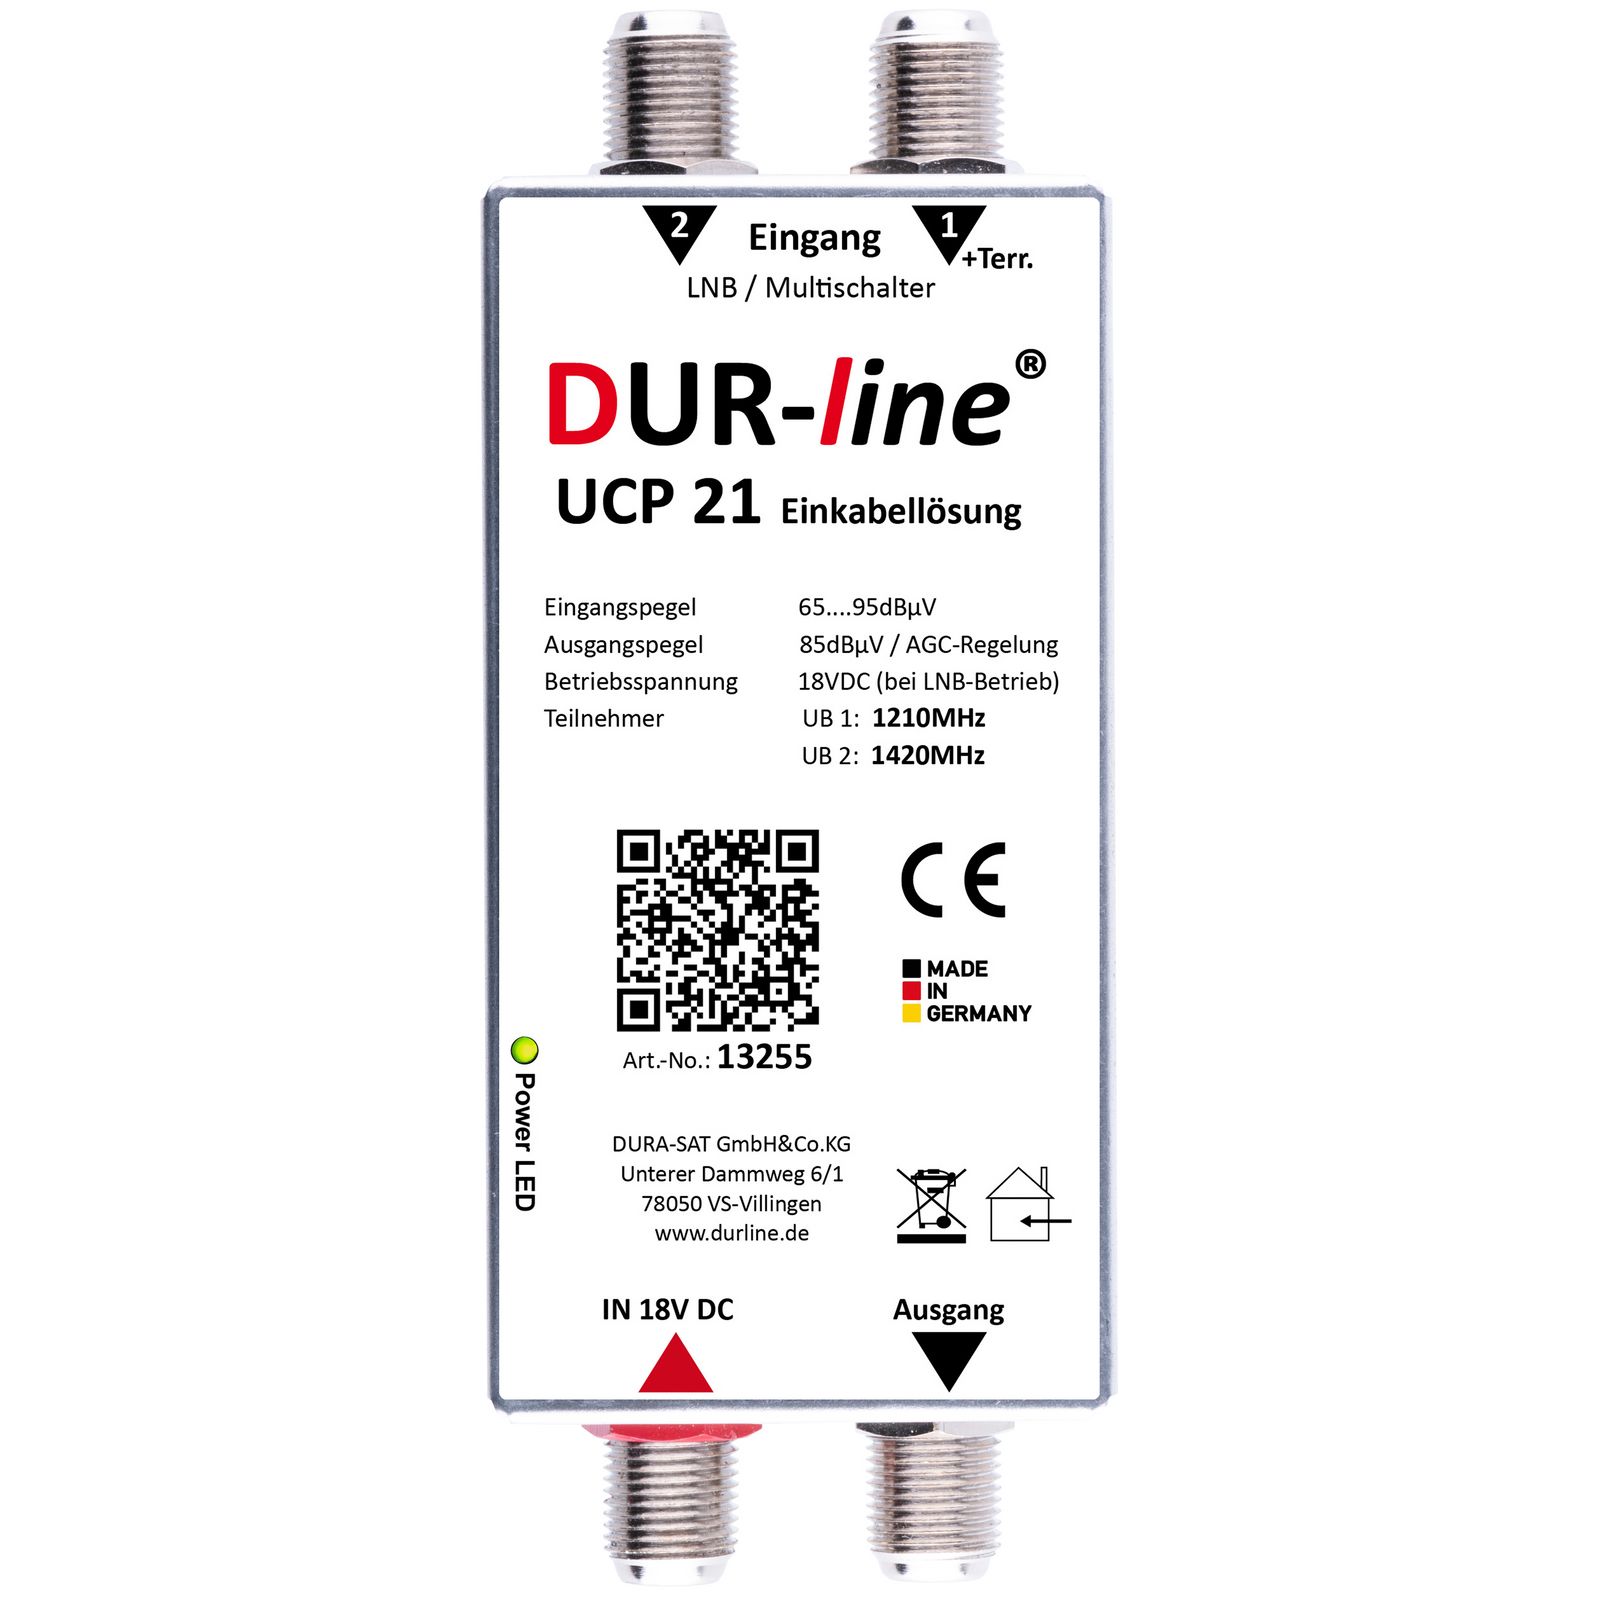 DUR-line UCP 21  Einkabellösung / Sat-Router inkl. Netzteil Unicable-/bilder/big/13255_dur-line-ucp-21-einkabelloesung_draufsicht.jpg